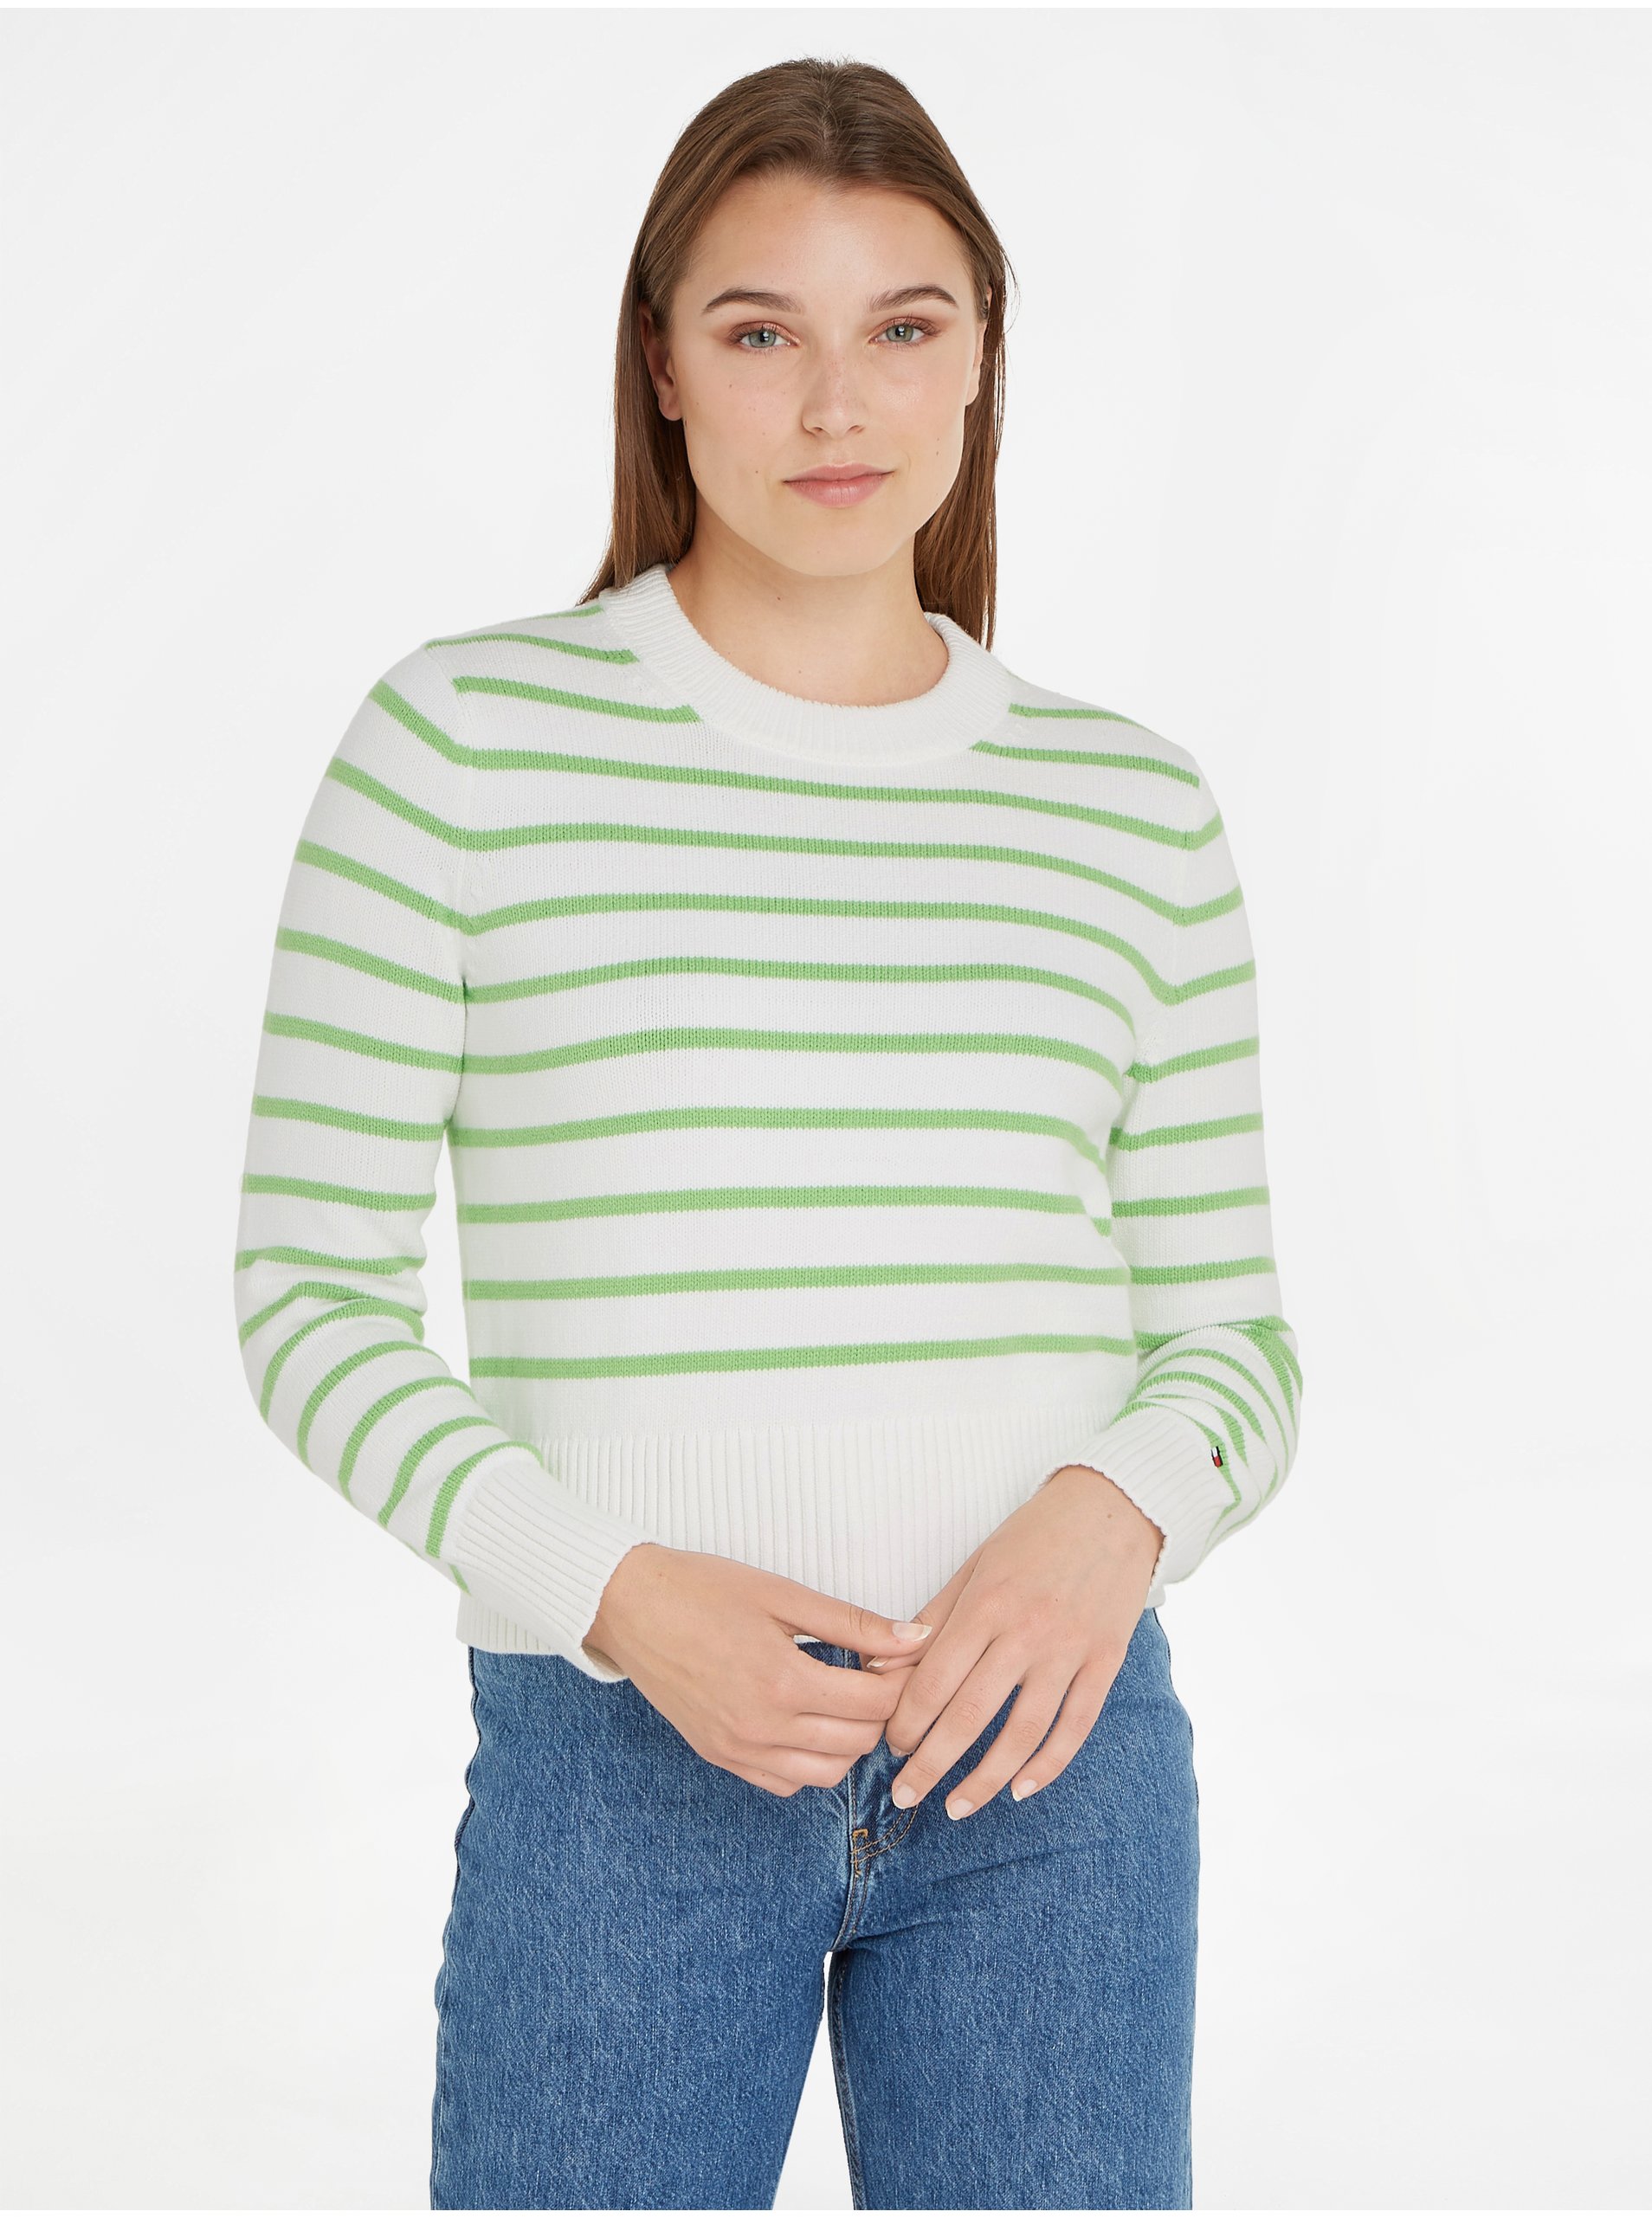 E-shop Zeleno-krémový dámský pruhovaný svetr Tommy Hilfiger